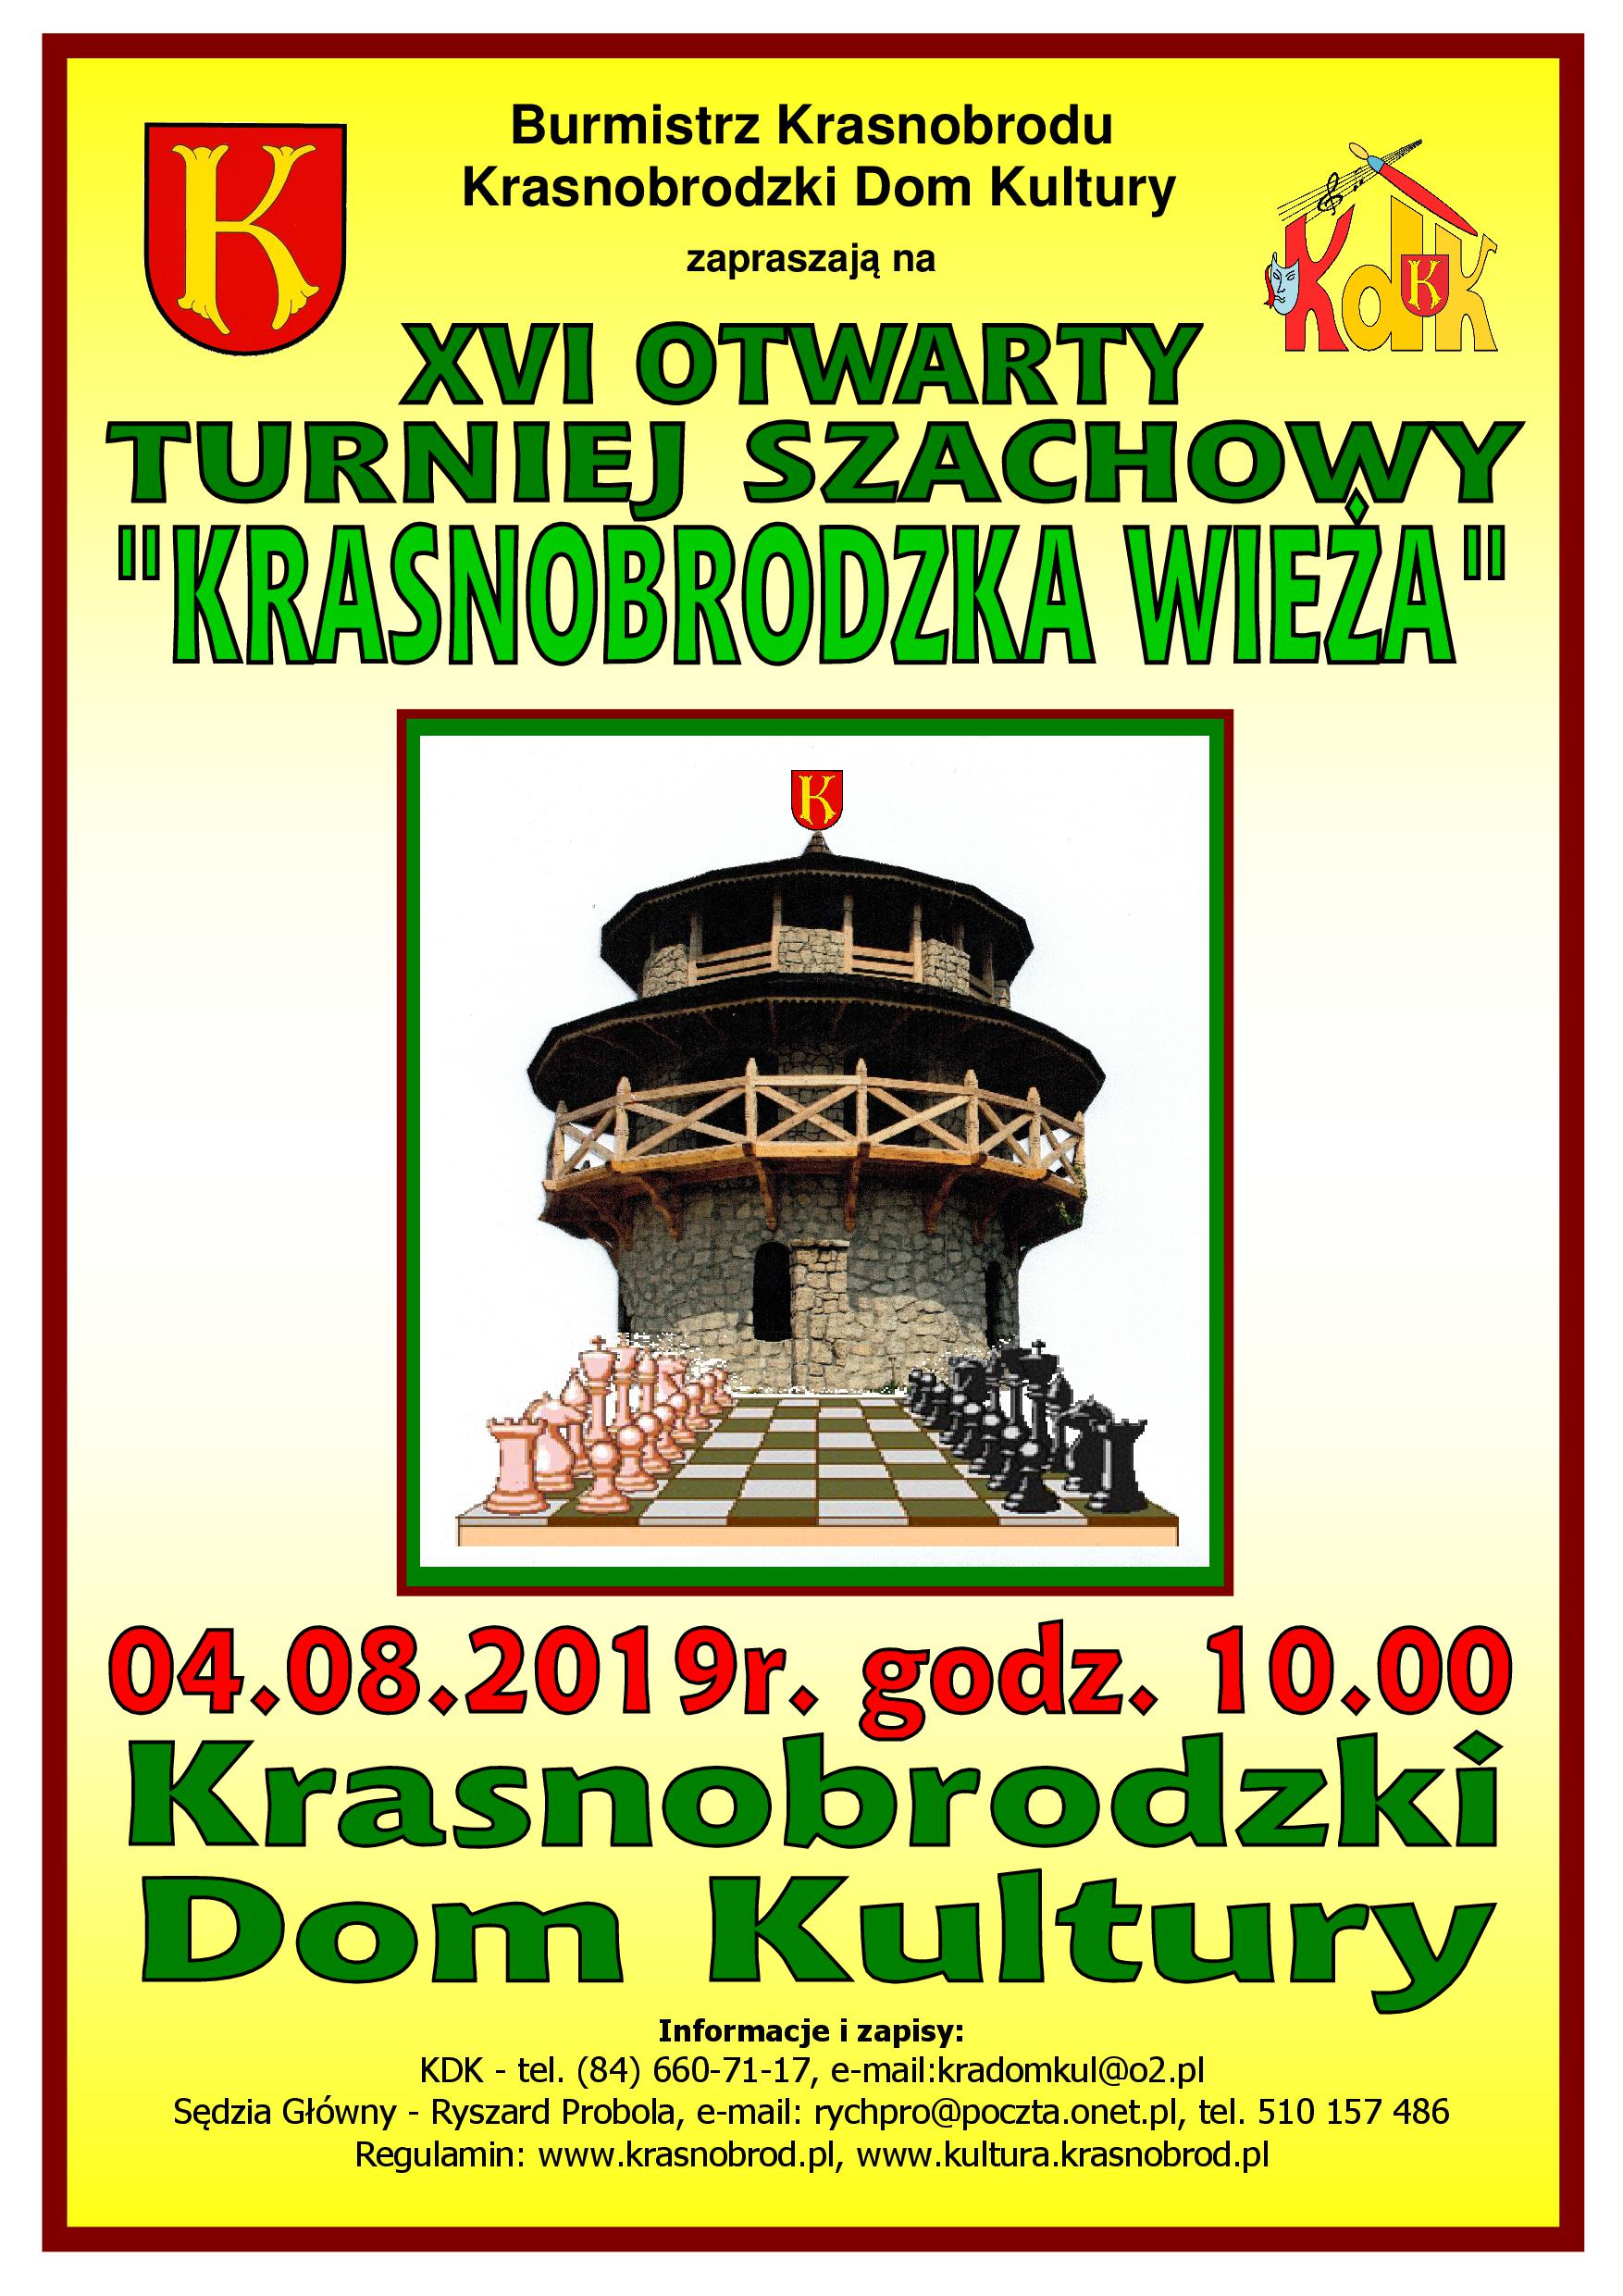 Plakat Krasnobrodzka Wieża 2019